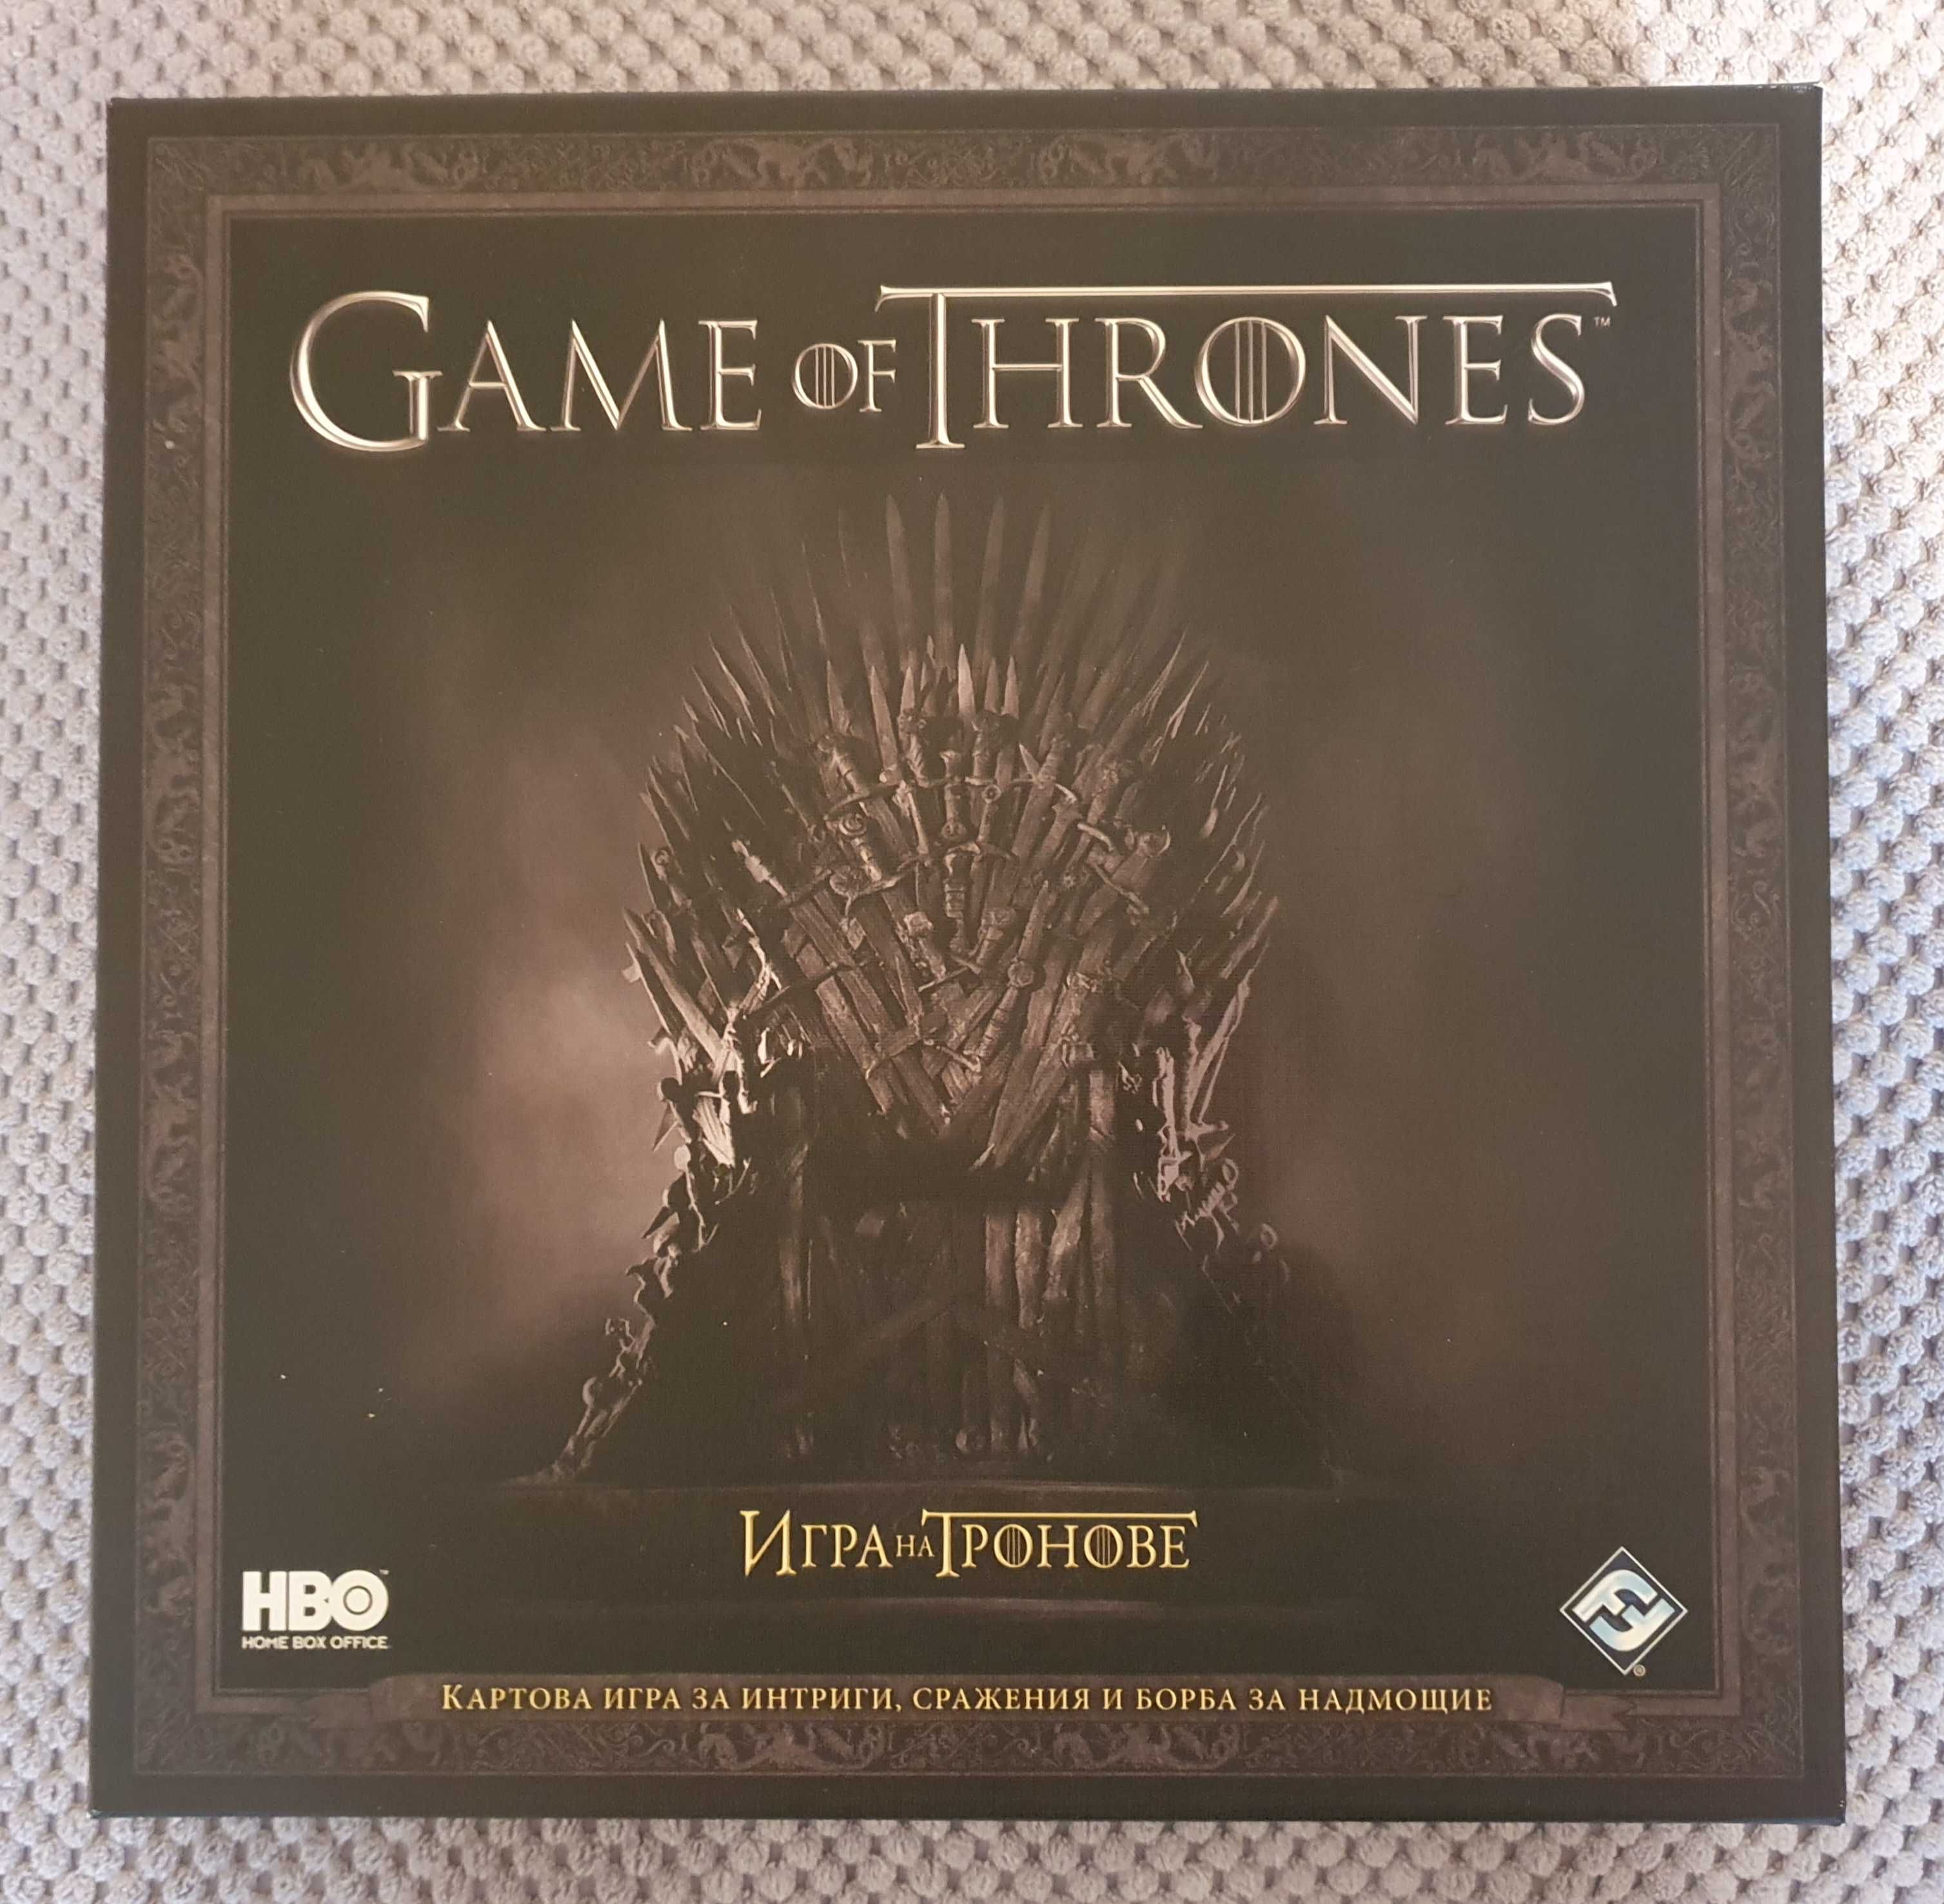 Игра на тронове (Game of Thrones): Картова игра (HBO издание)